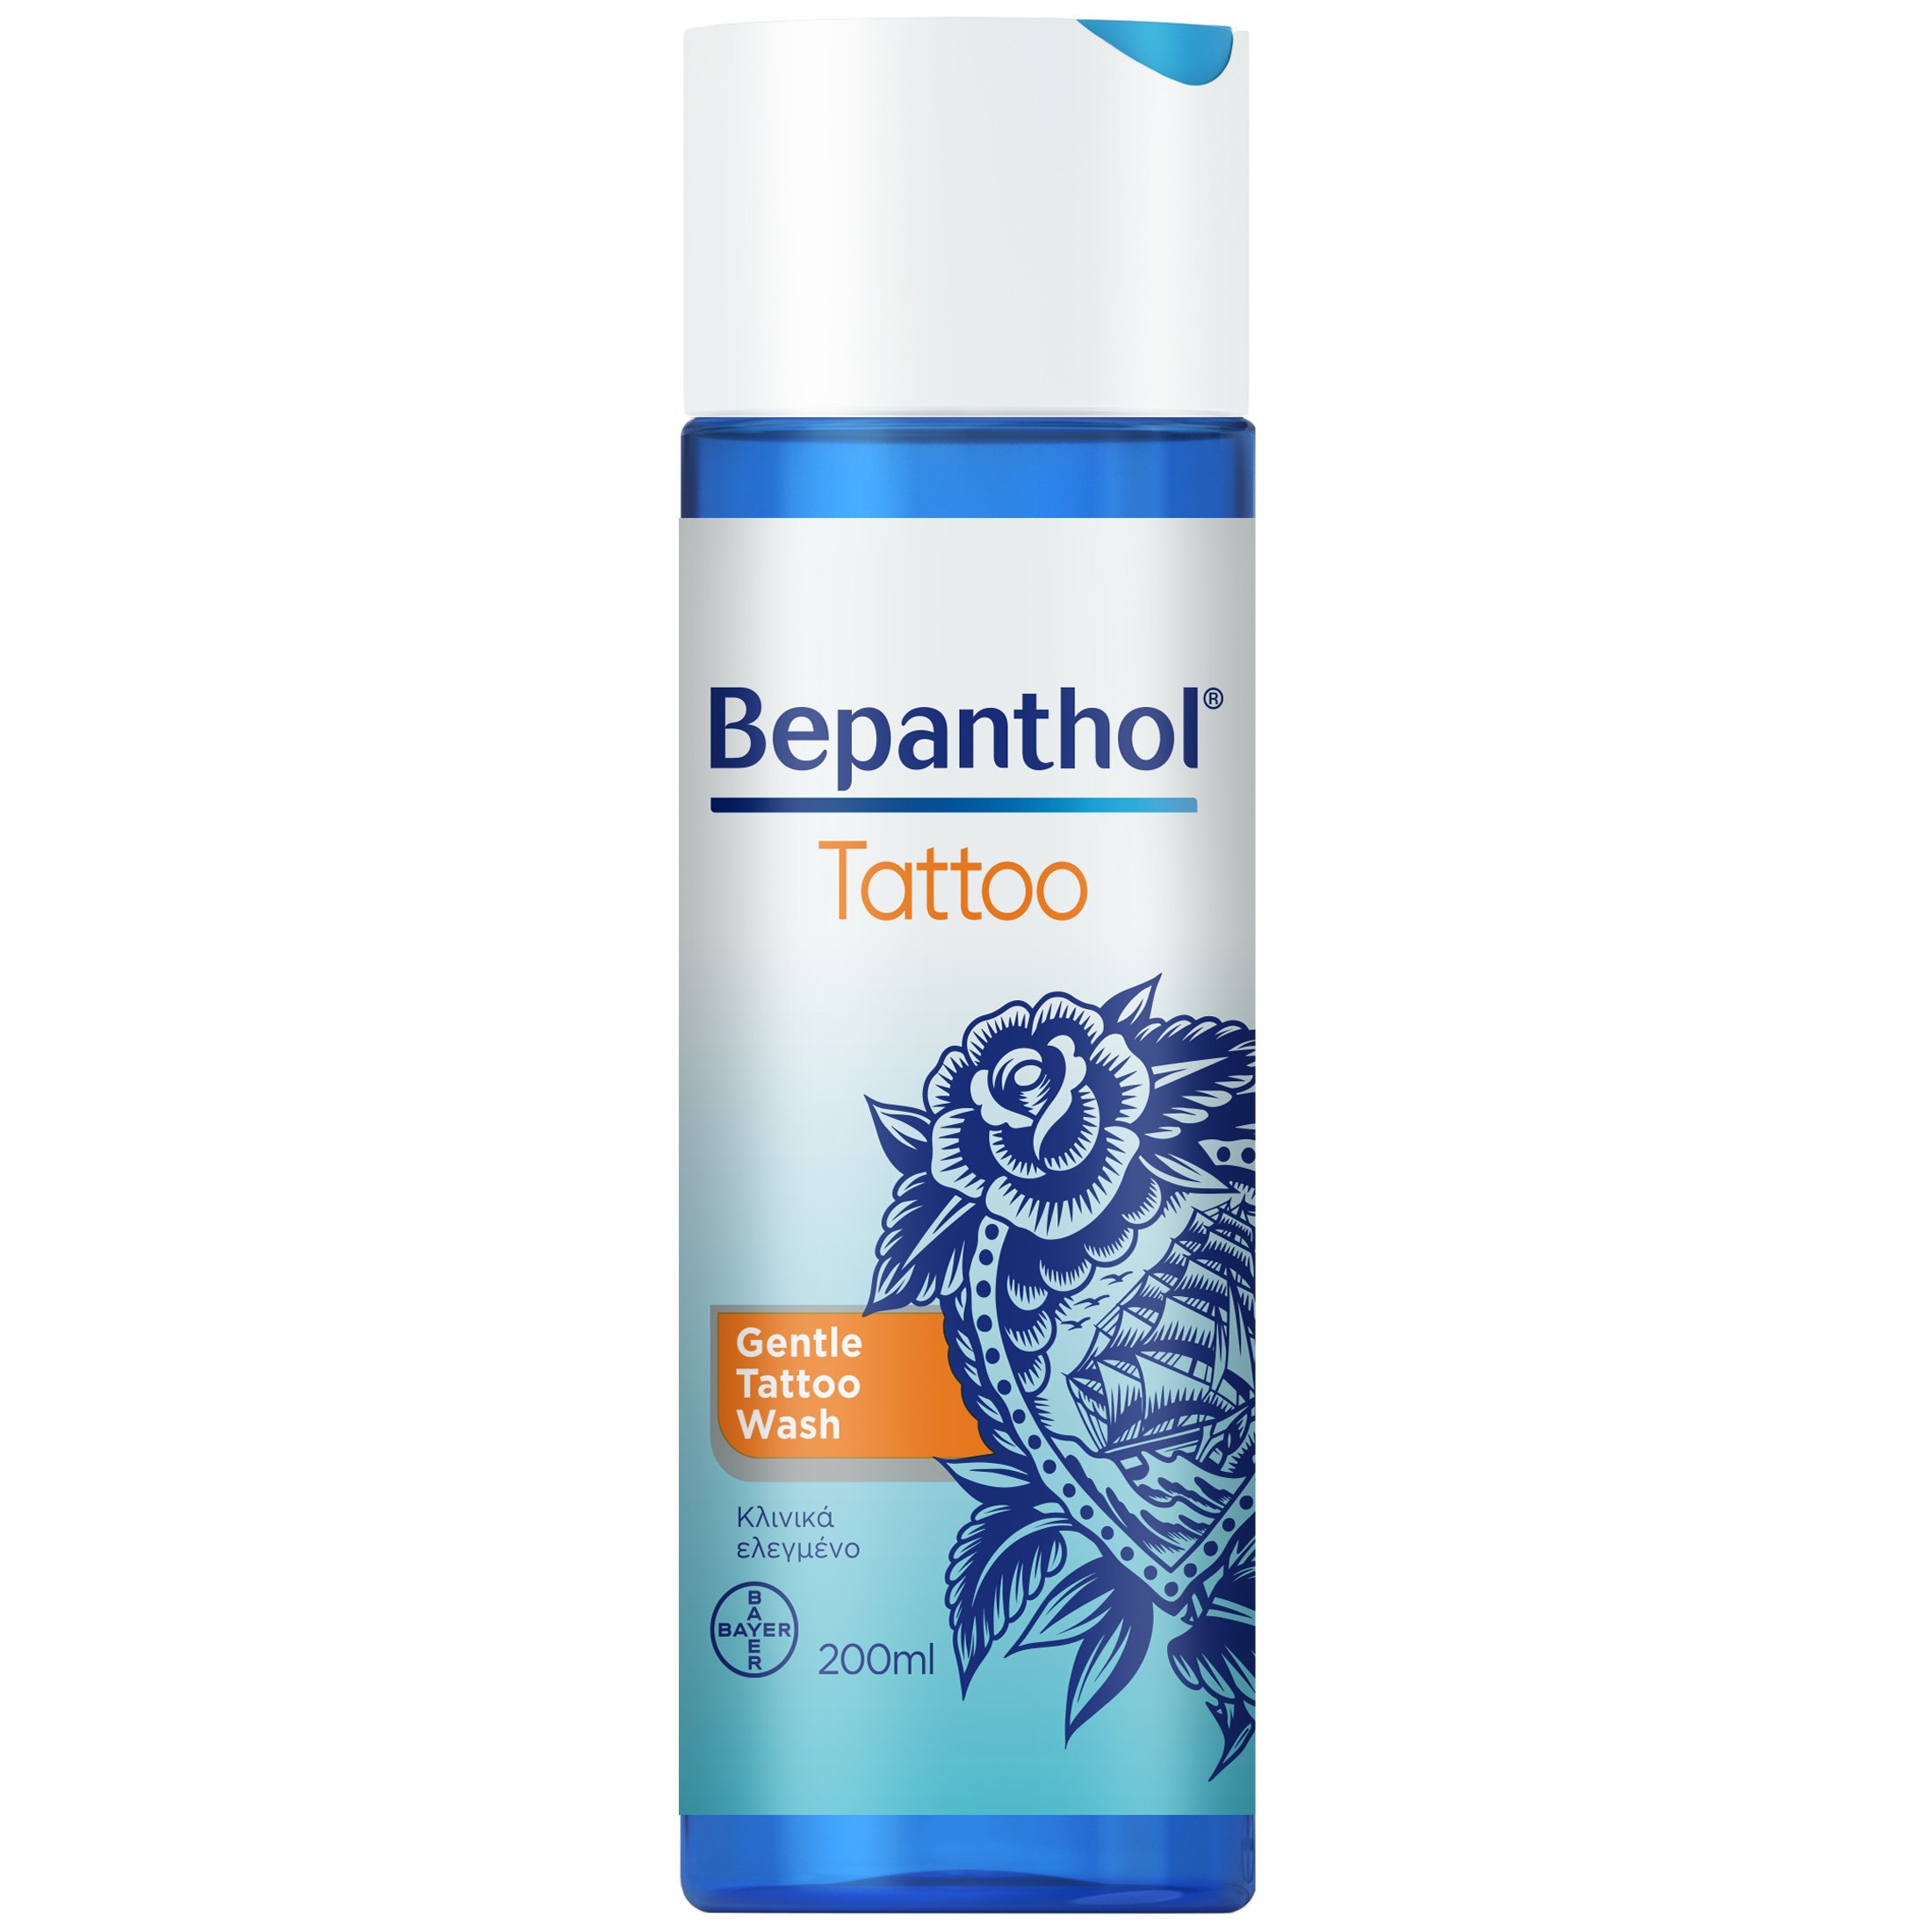 Bepanthol Bepanthol Gentle Tattoo Wash Απαλός Καθαρισμός για Δέρμα με Τατουάζ 200ml